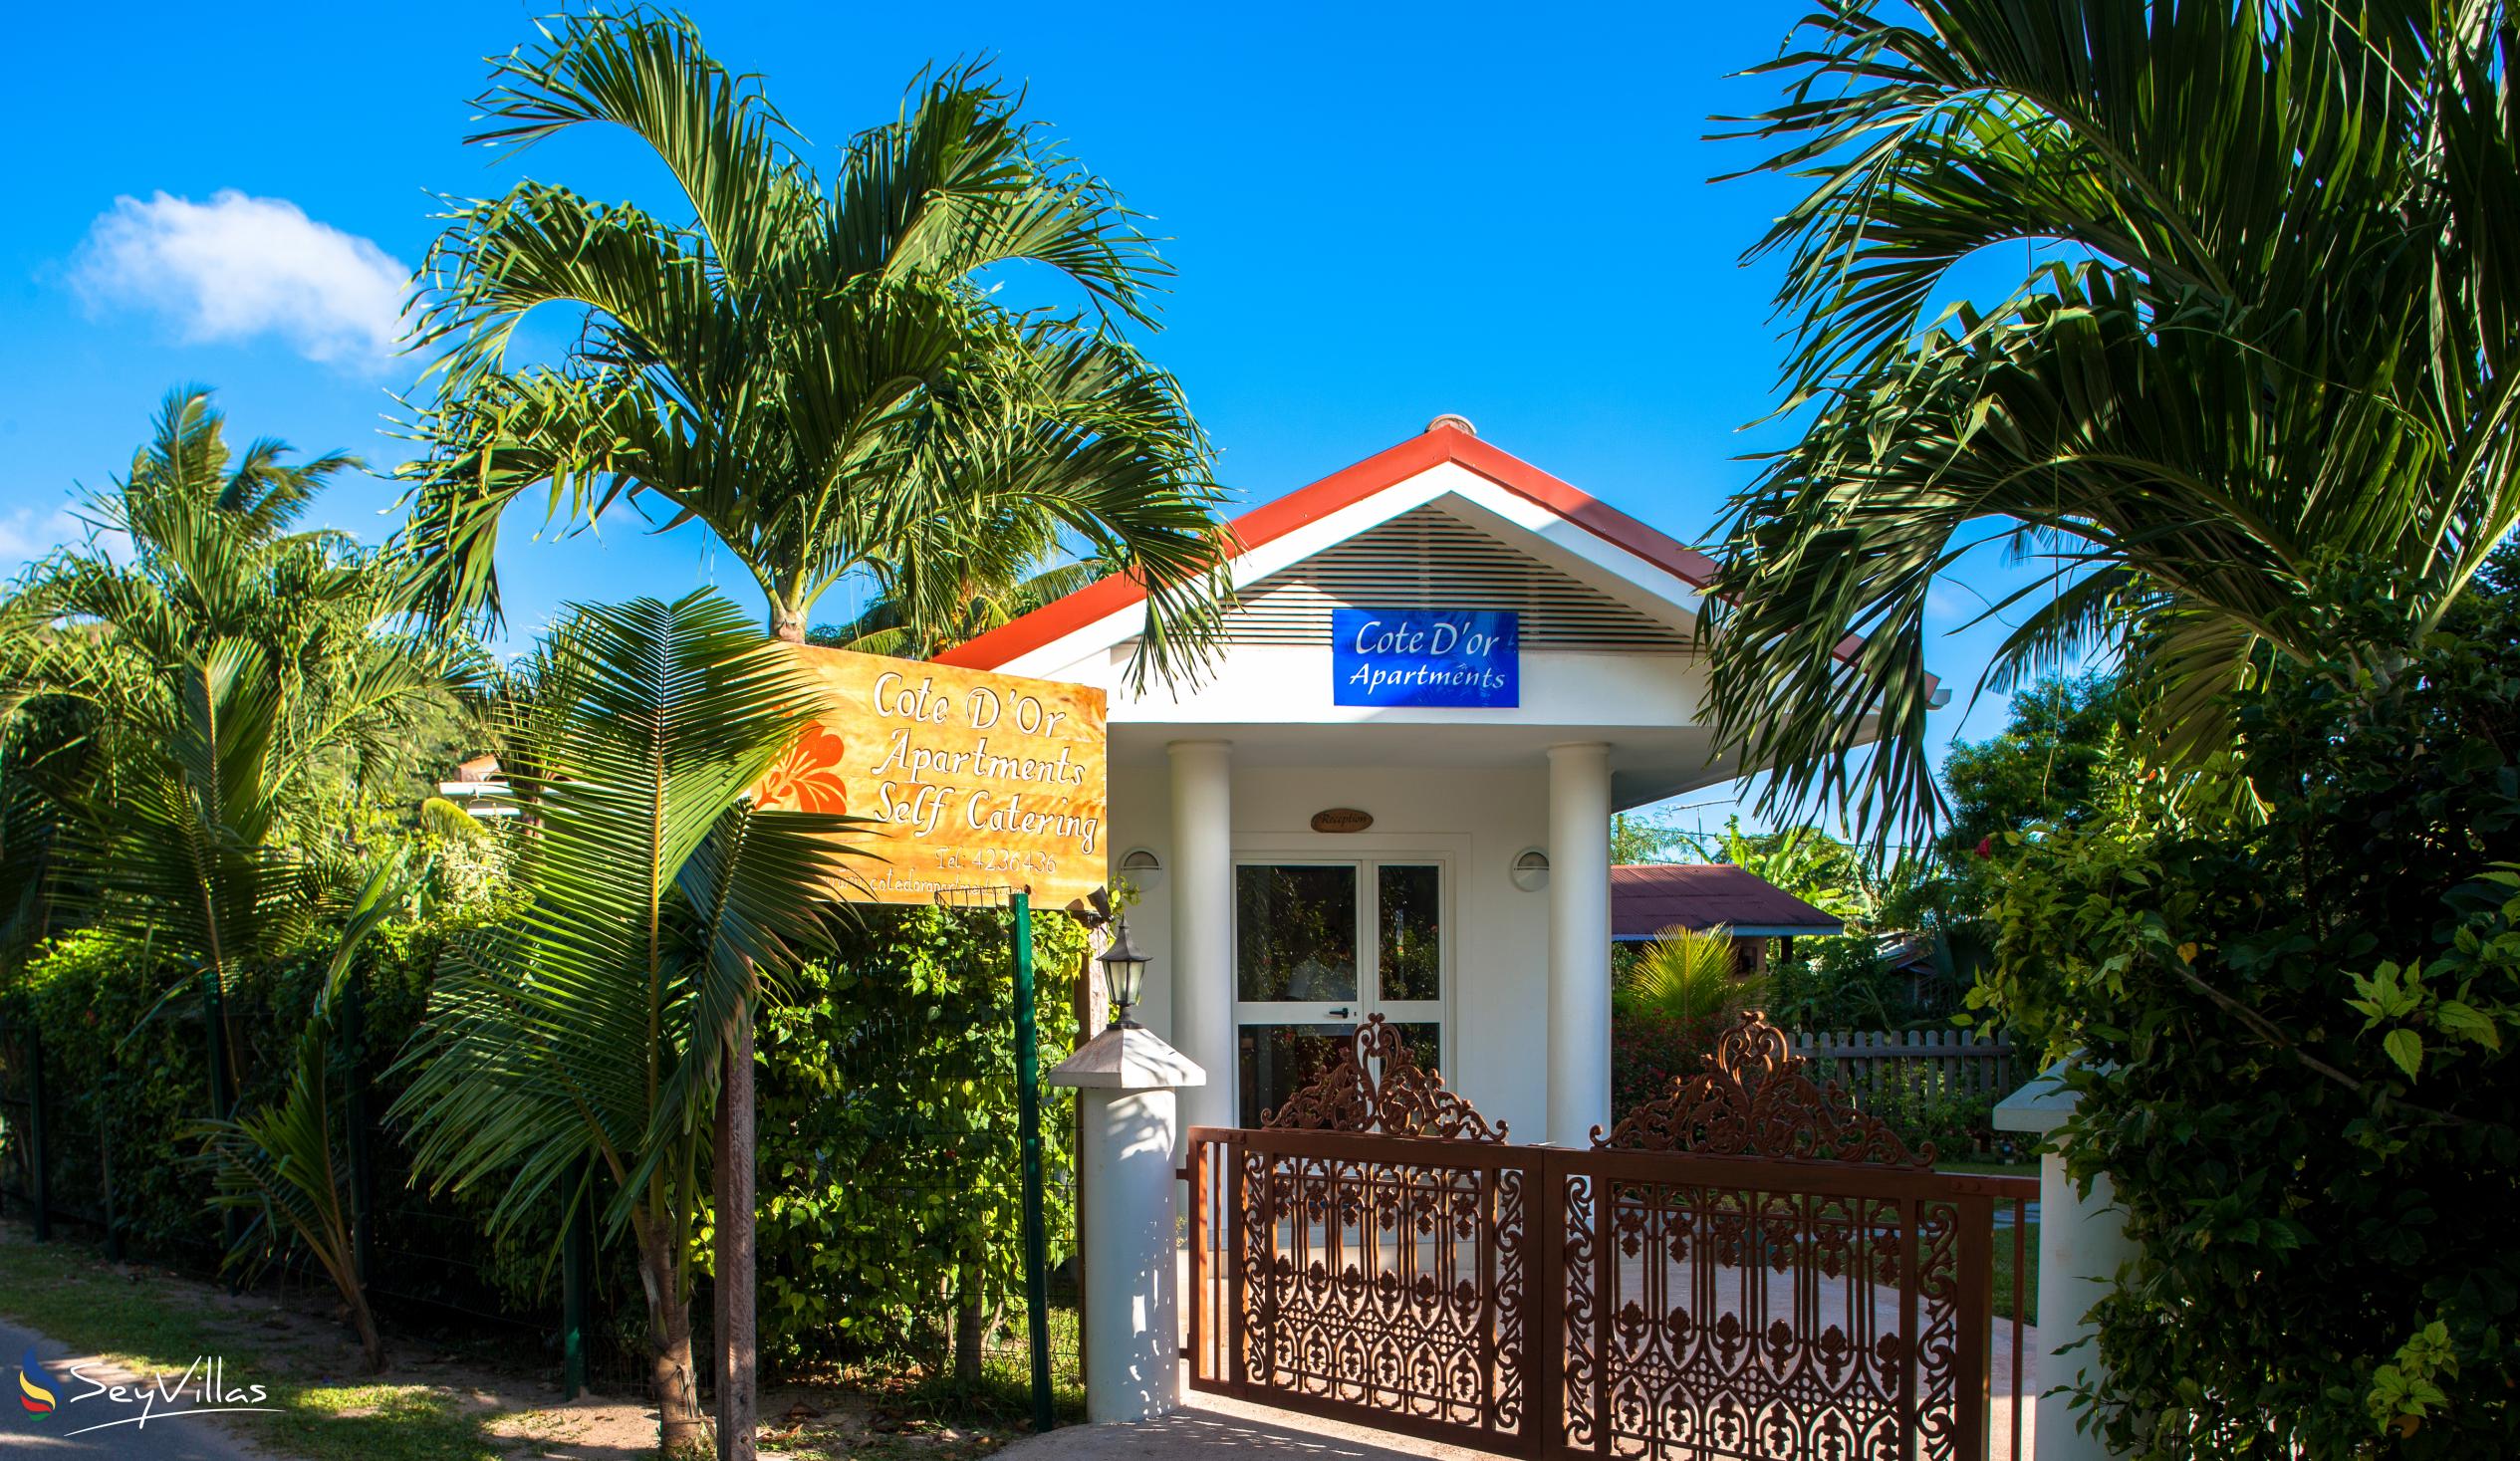 Foto 6: Cote d'Or Apartments - Aussenbereich - Praslin (Seychellen)